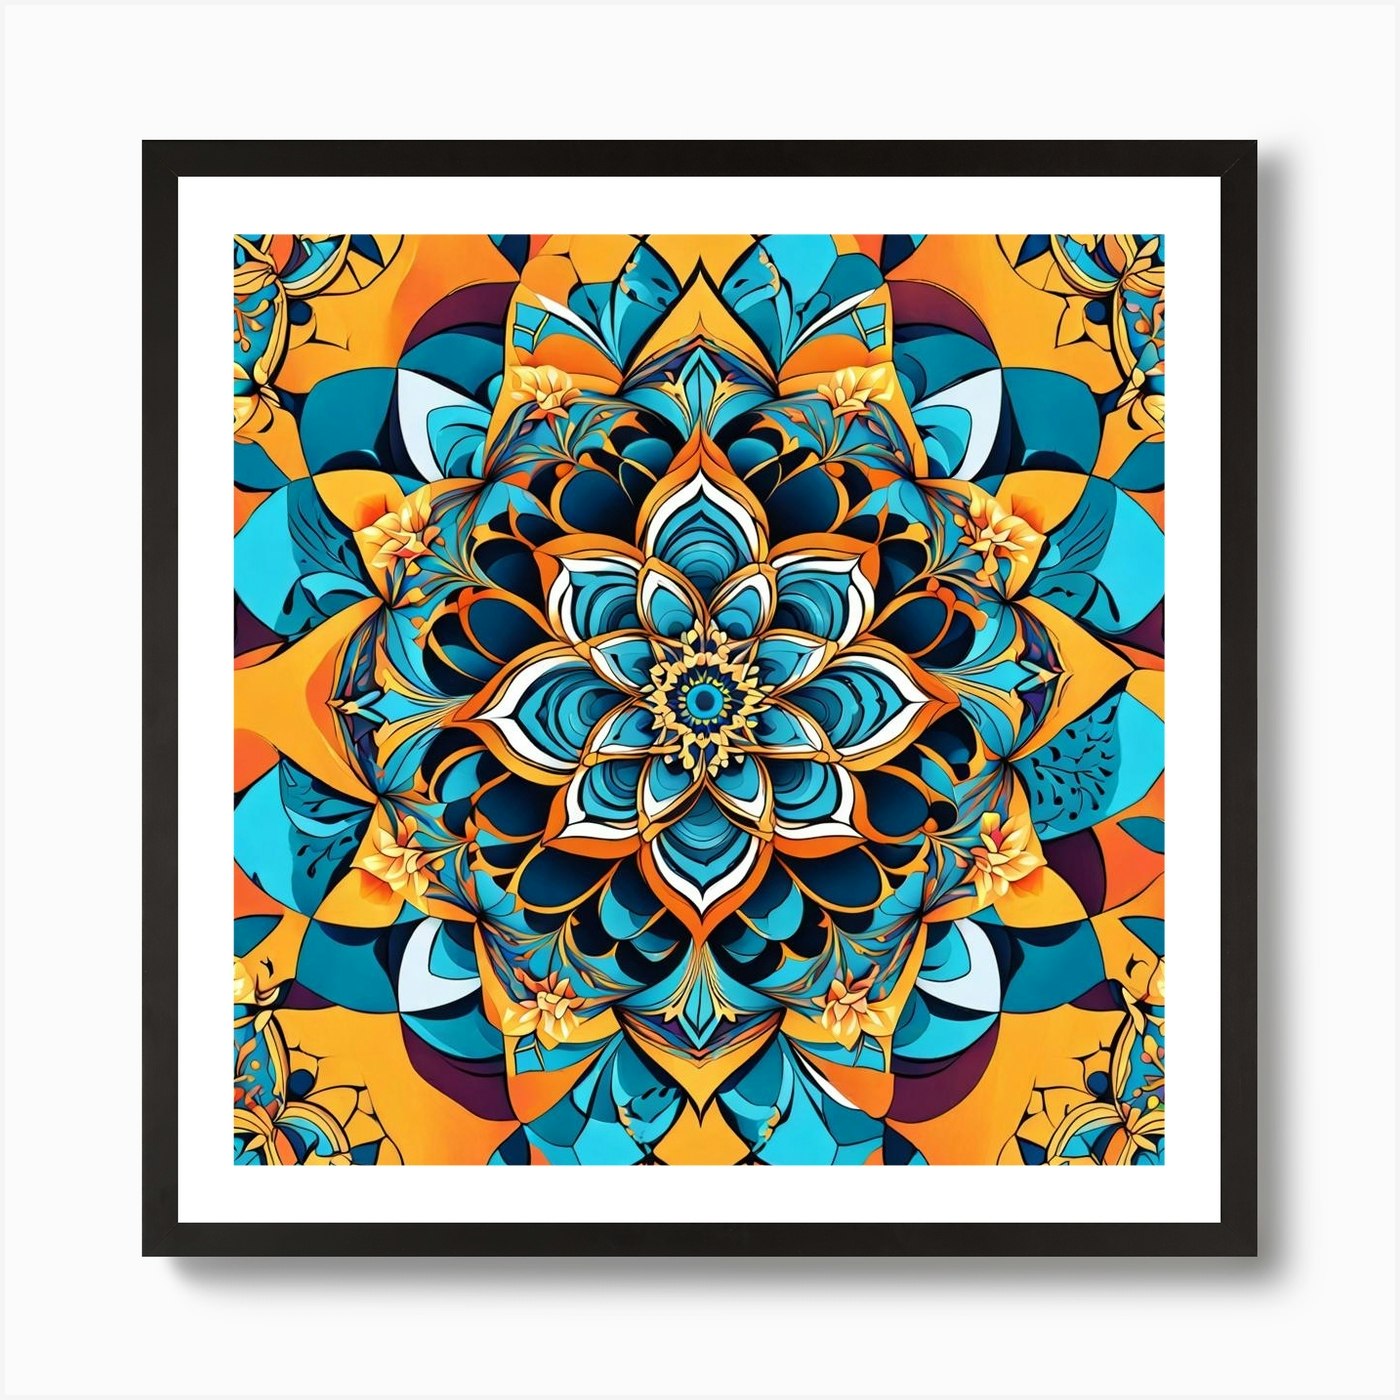 Mandala Wall Art & Canvas Prints, Mandala Panoramic Photos, Posters,  Photography, Wall Art, Framed Prints & More